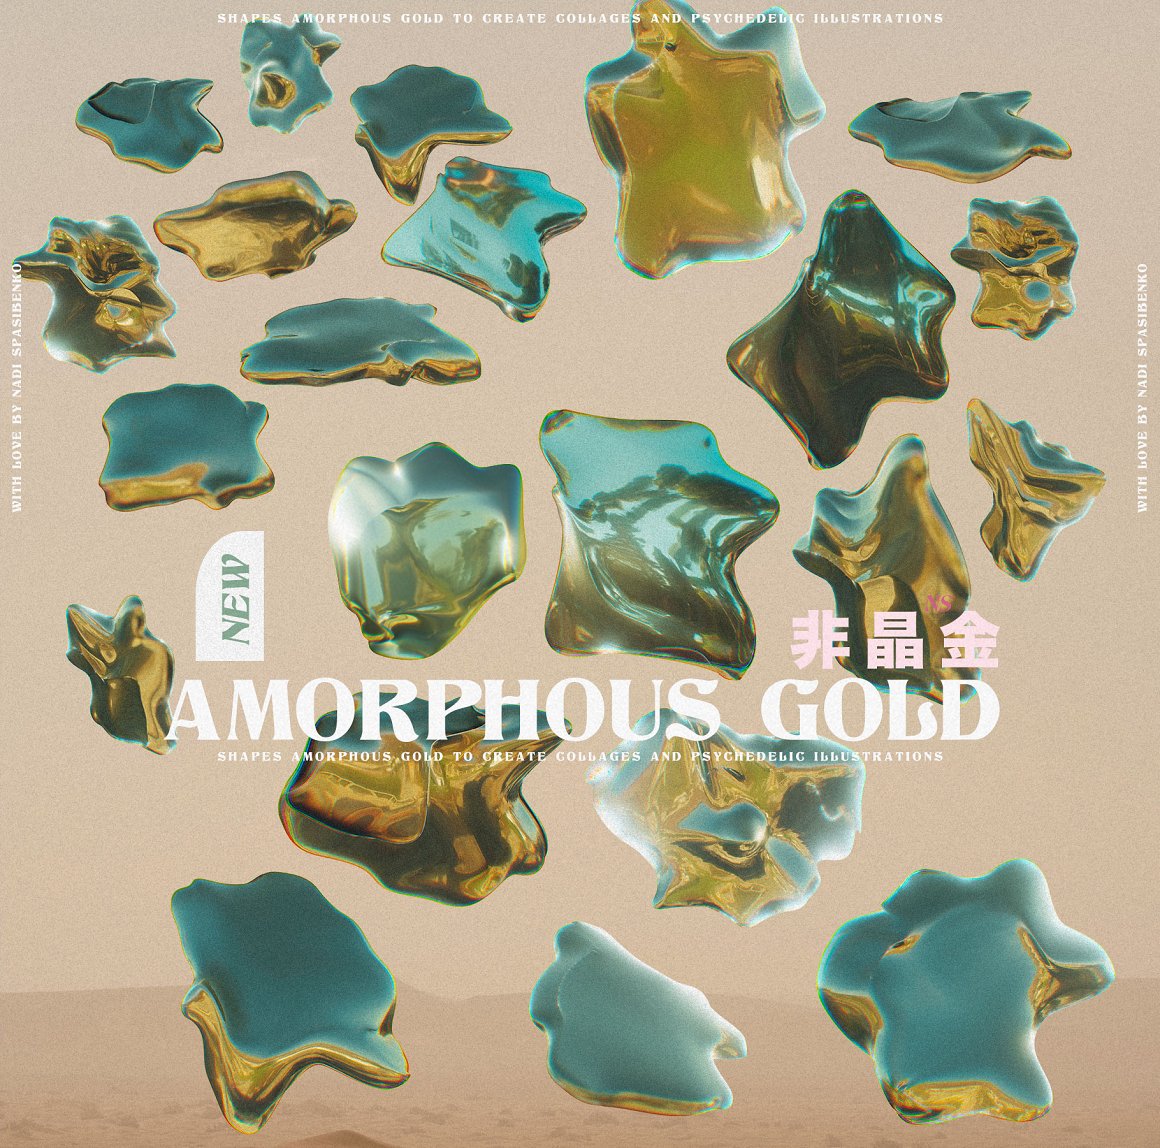 抽象艺术酸性液态3d迷幻黄金形状背景海报PBG素材包 Amorphous Liquid Gold 图片素材 第12张